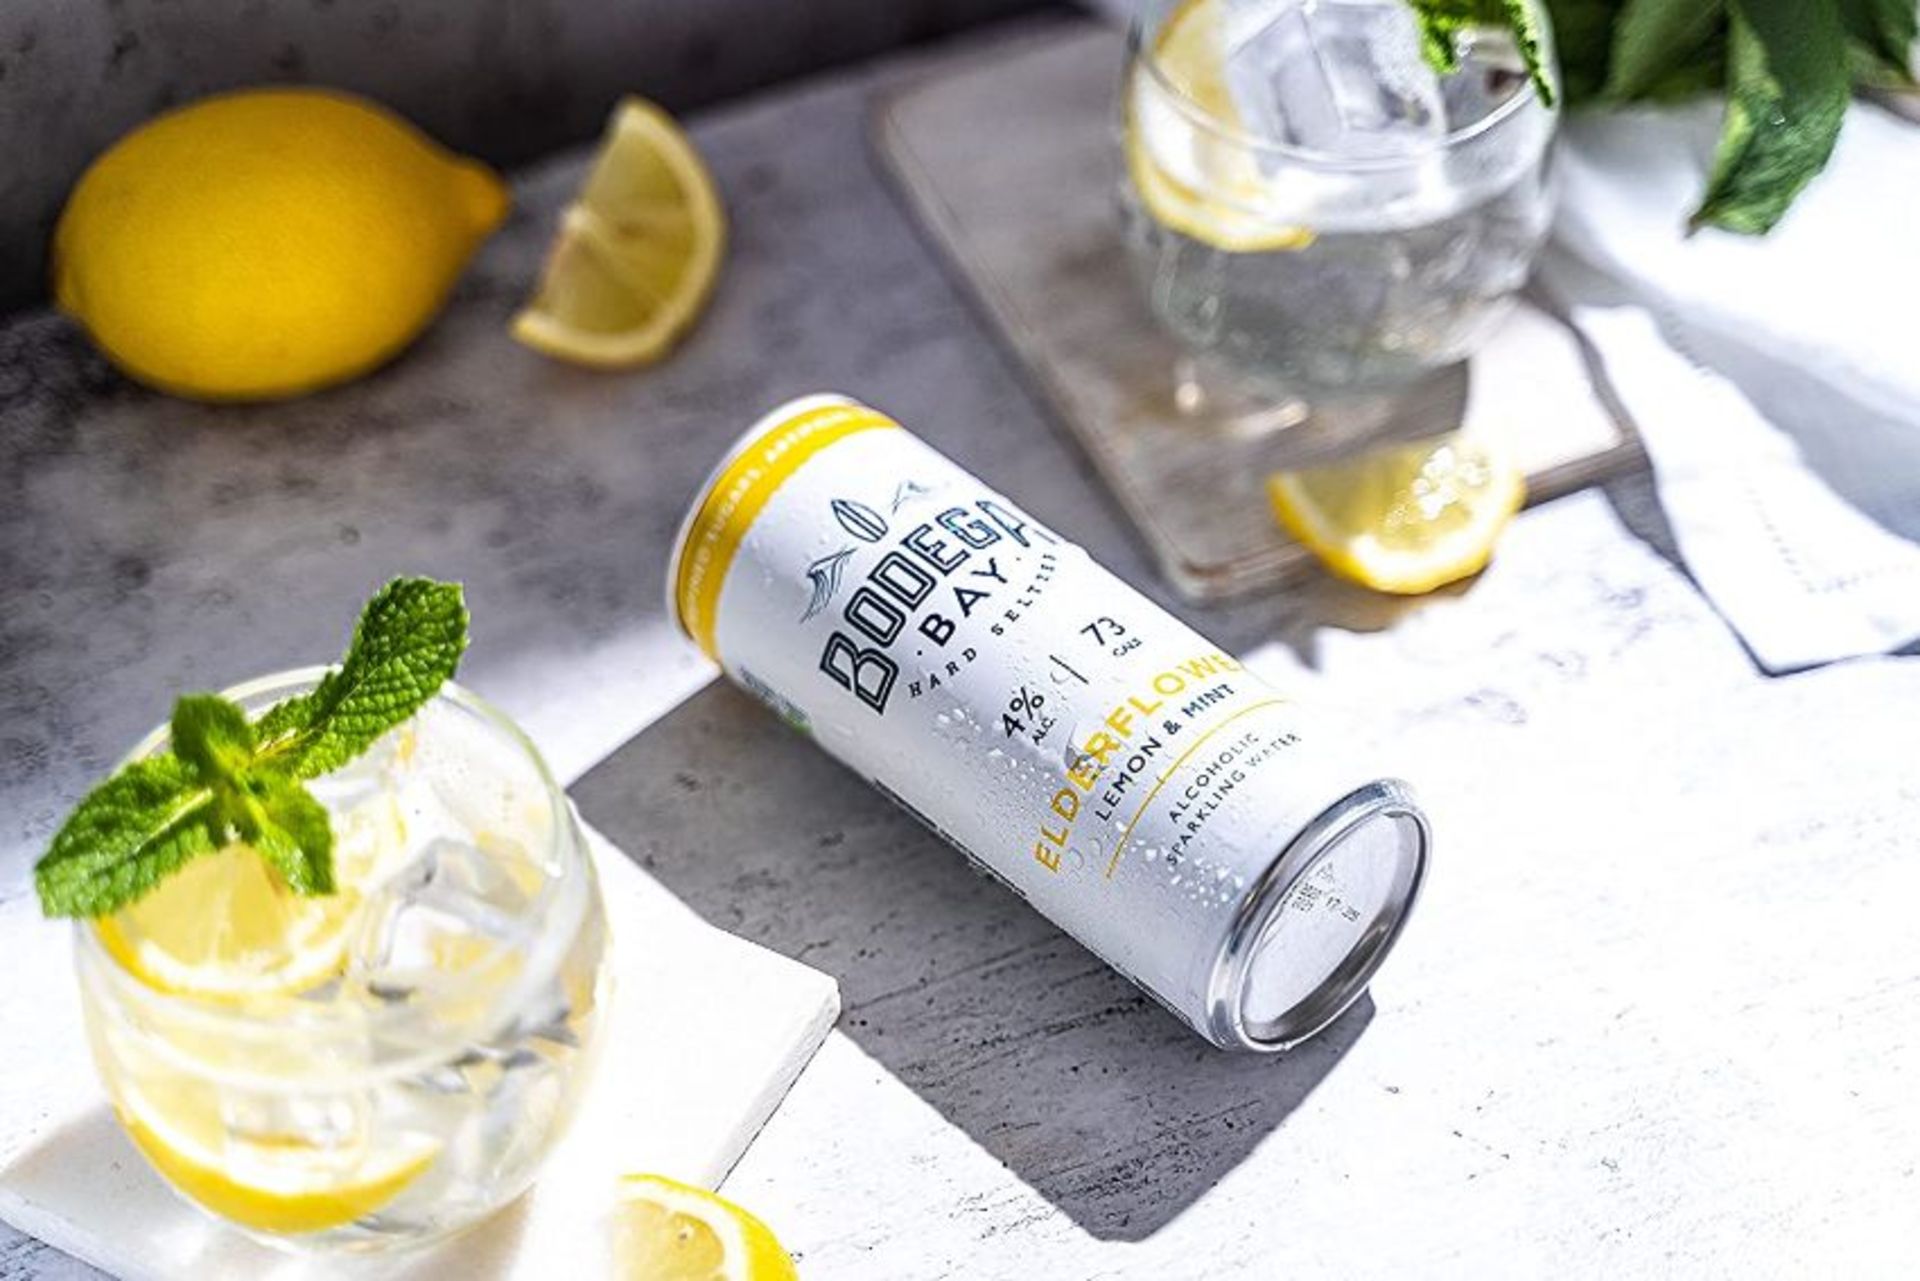 24 x Bodega Bay Hard Seltzer 250ml Alcoholic Sparkling Water Drinks - Elderflower Lemon & Mint - Image 7 of 9